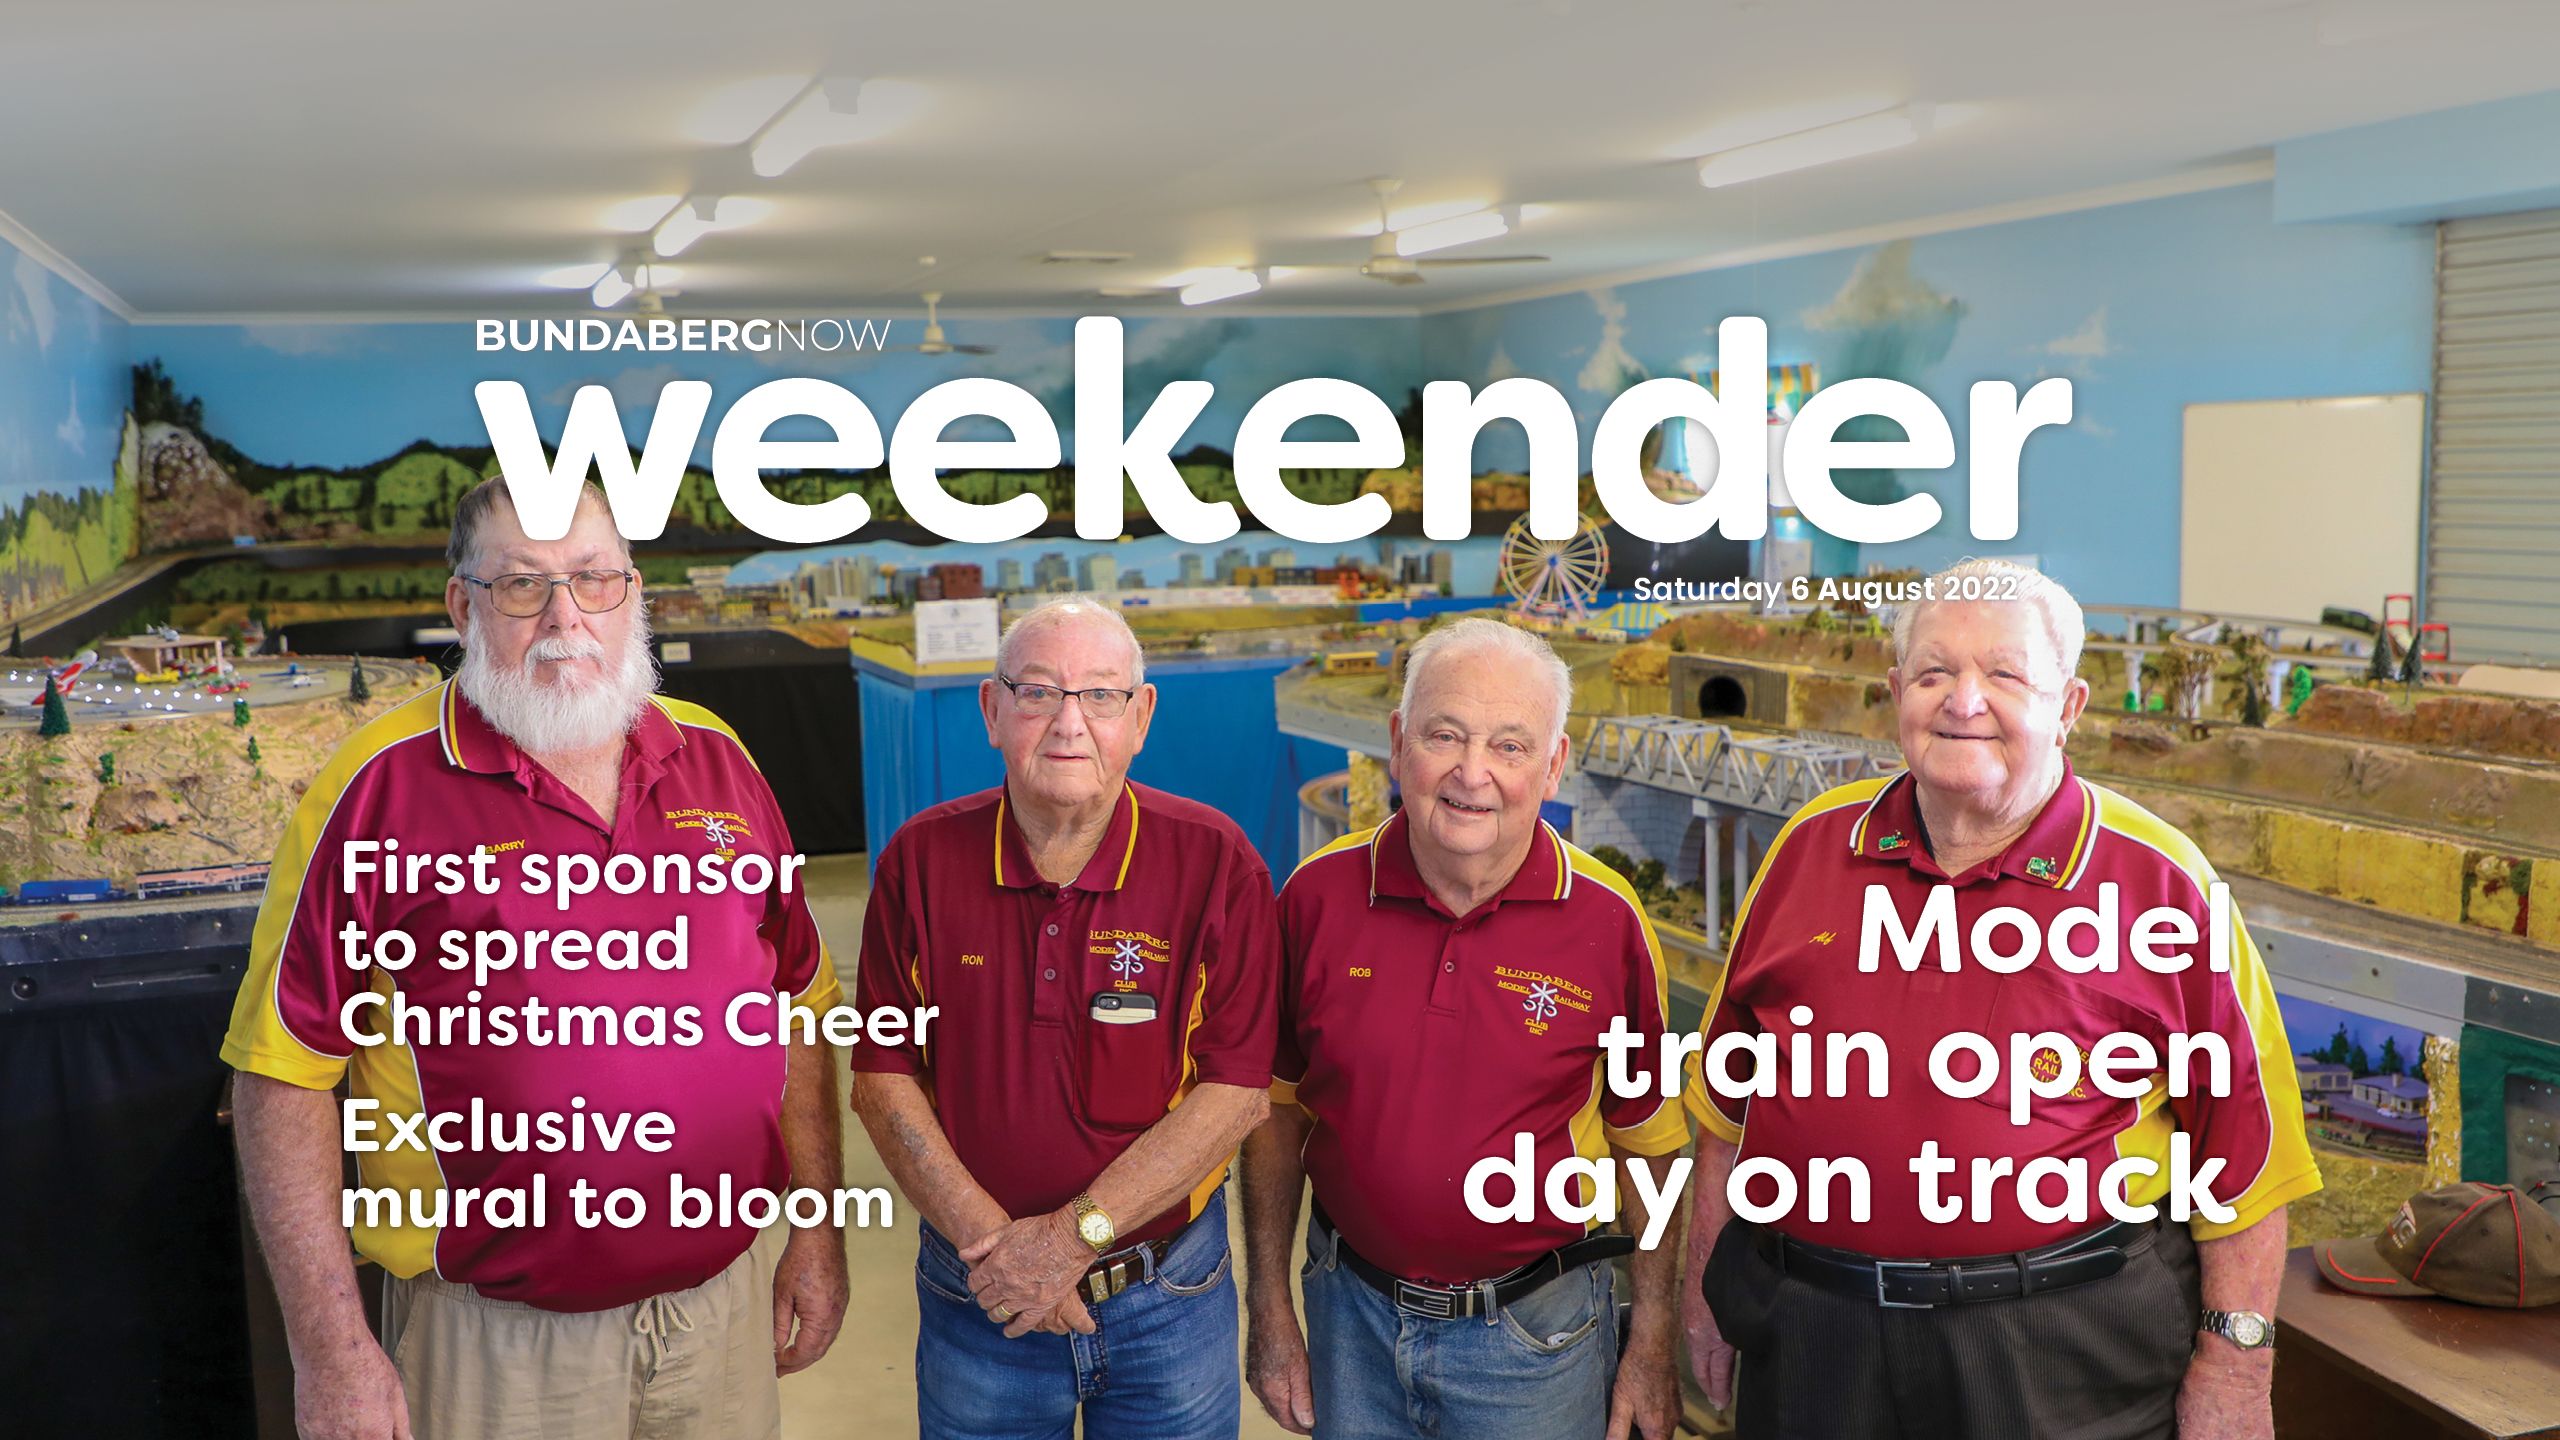 Weekender: Model train open day on track